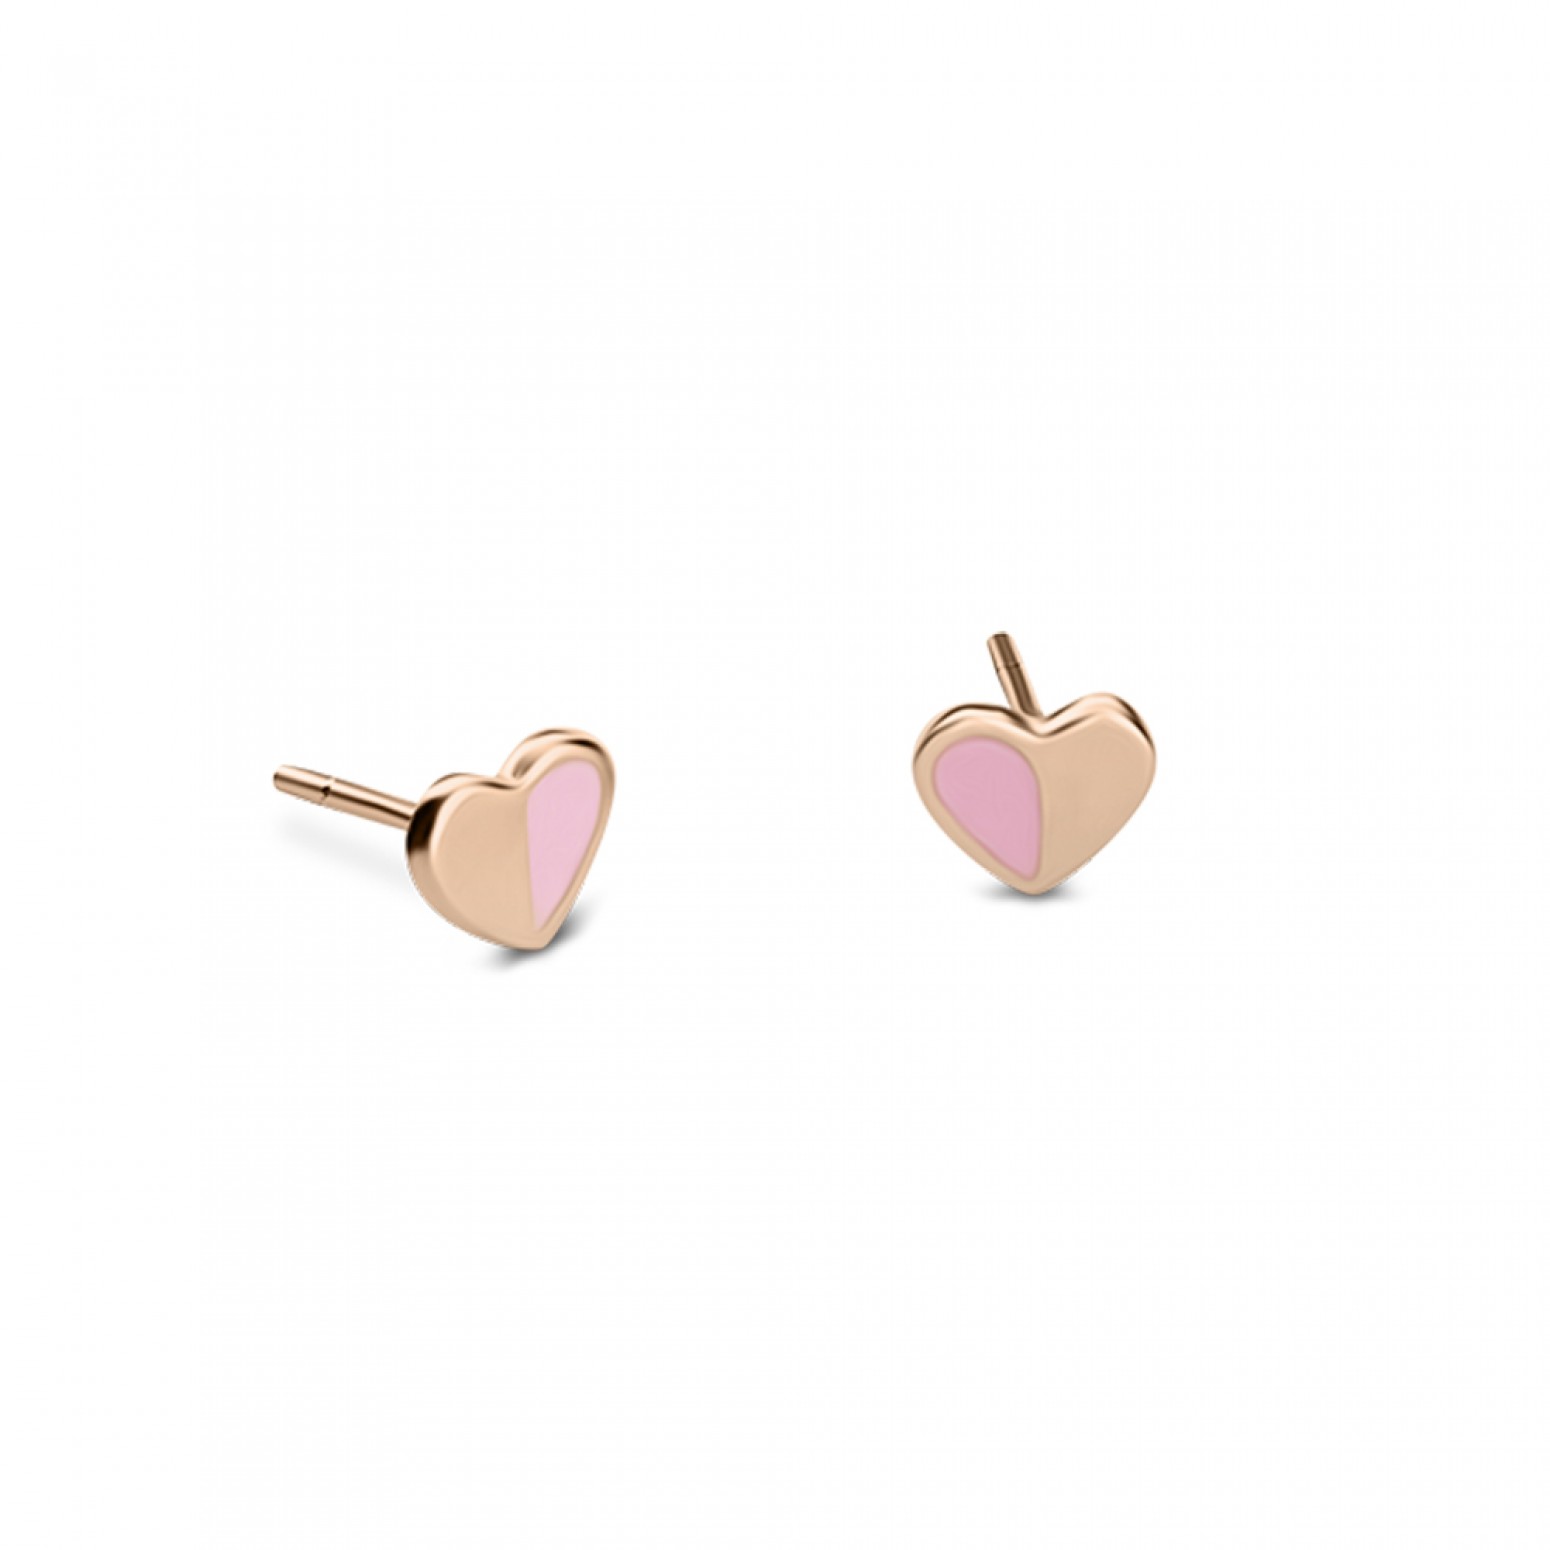 Heart baby earrings K9 pink gold with enamel, ps0119 EARRINGS Κοσμηματα - chrilia.gr